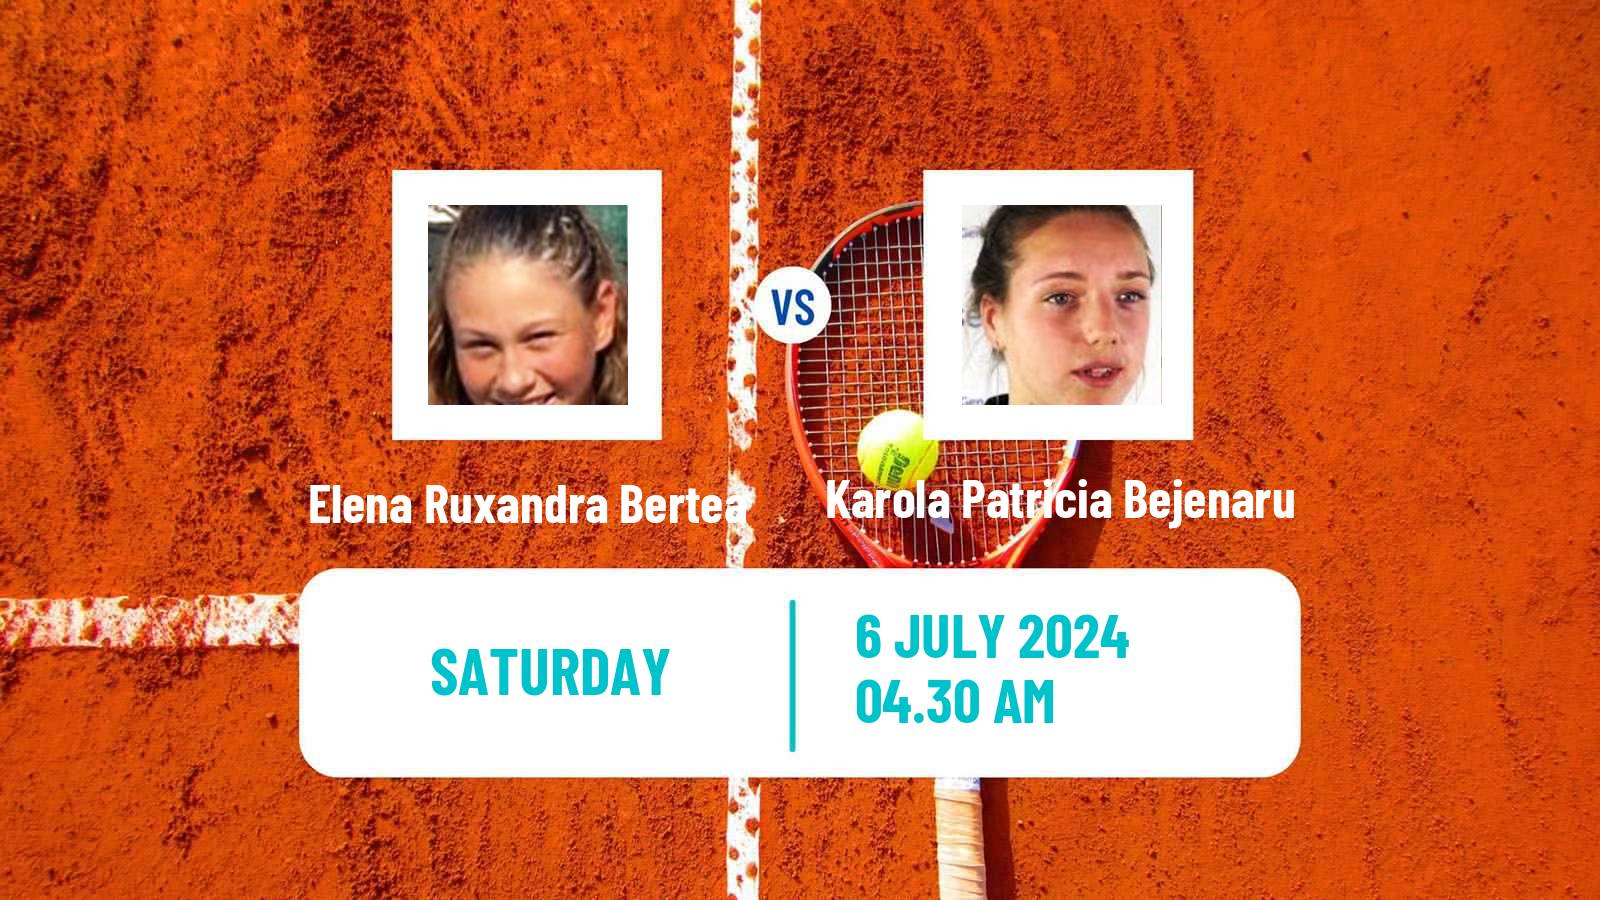 Tennis ITF W15 Galati 2 Women Elena Ruxandra Bertea - Karola Patricia Bejenaru